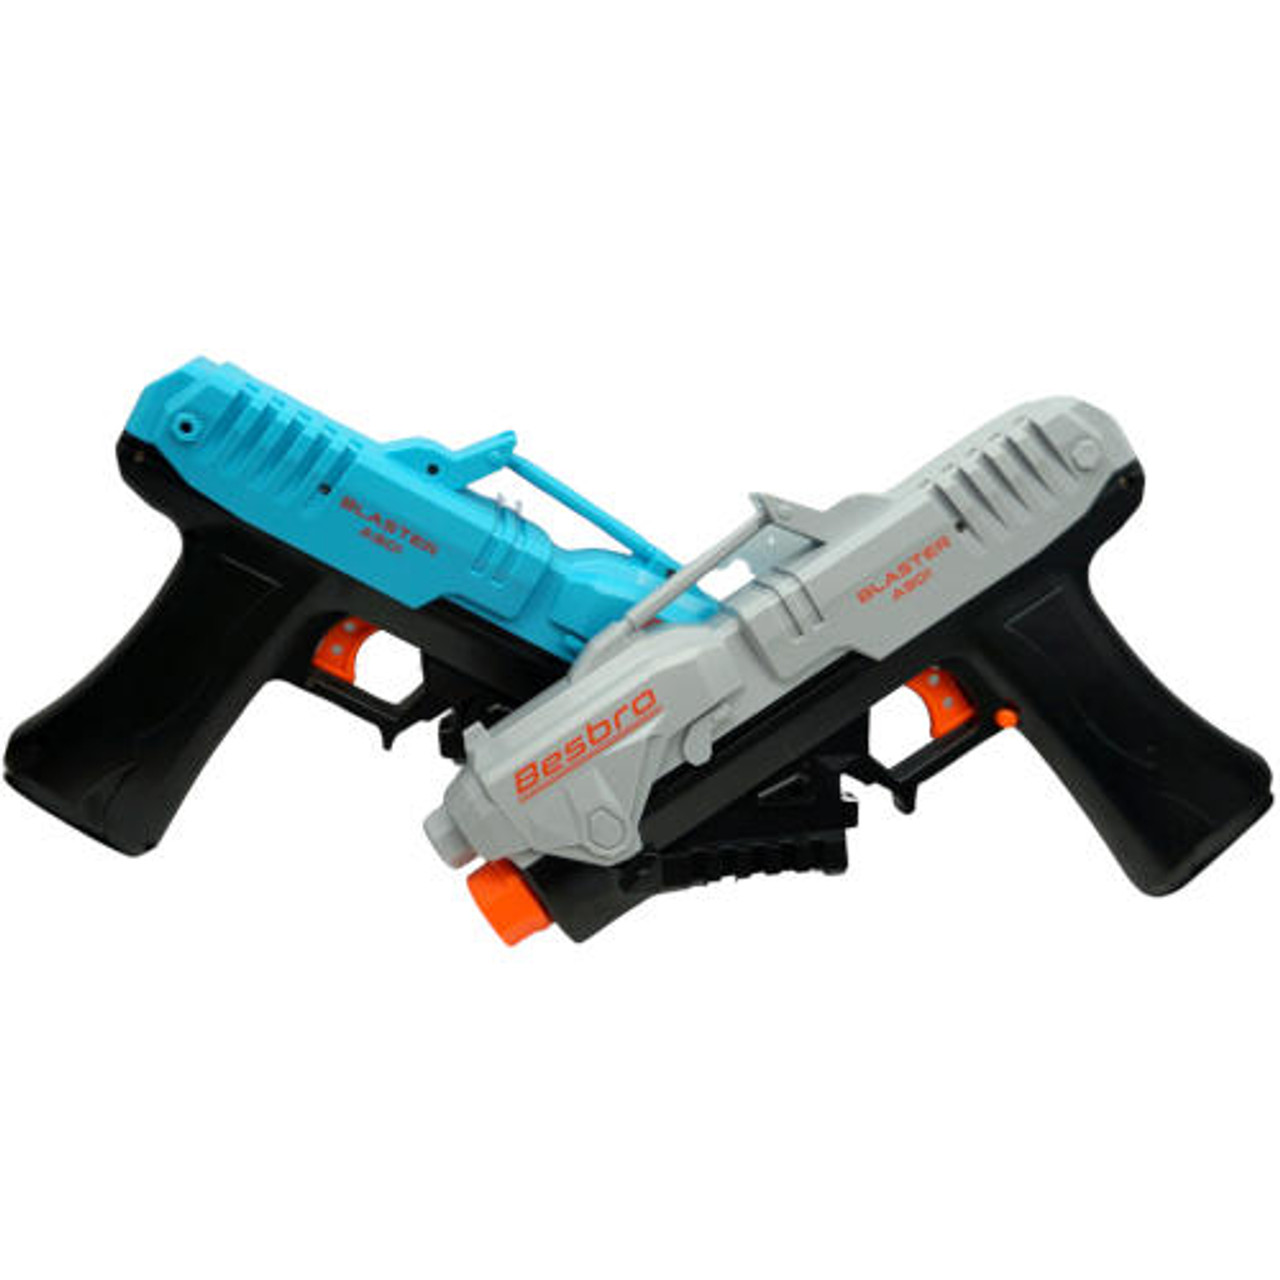 Toy Foam Blaster Gun, Shooting Guns Toy, Game Supplies